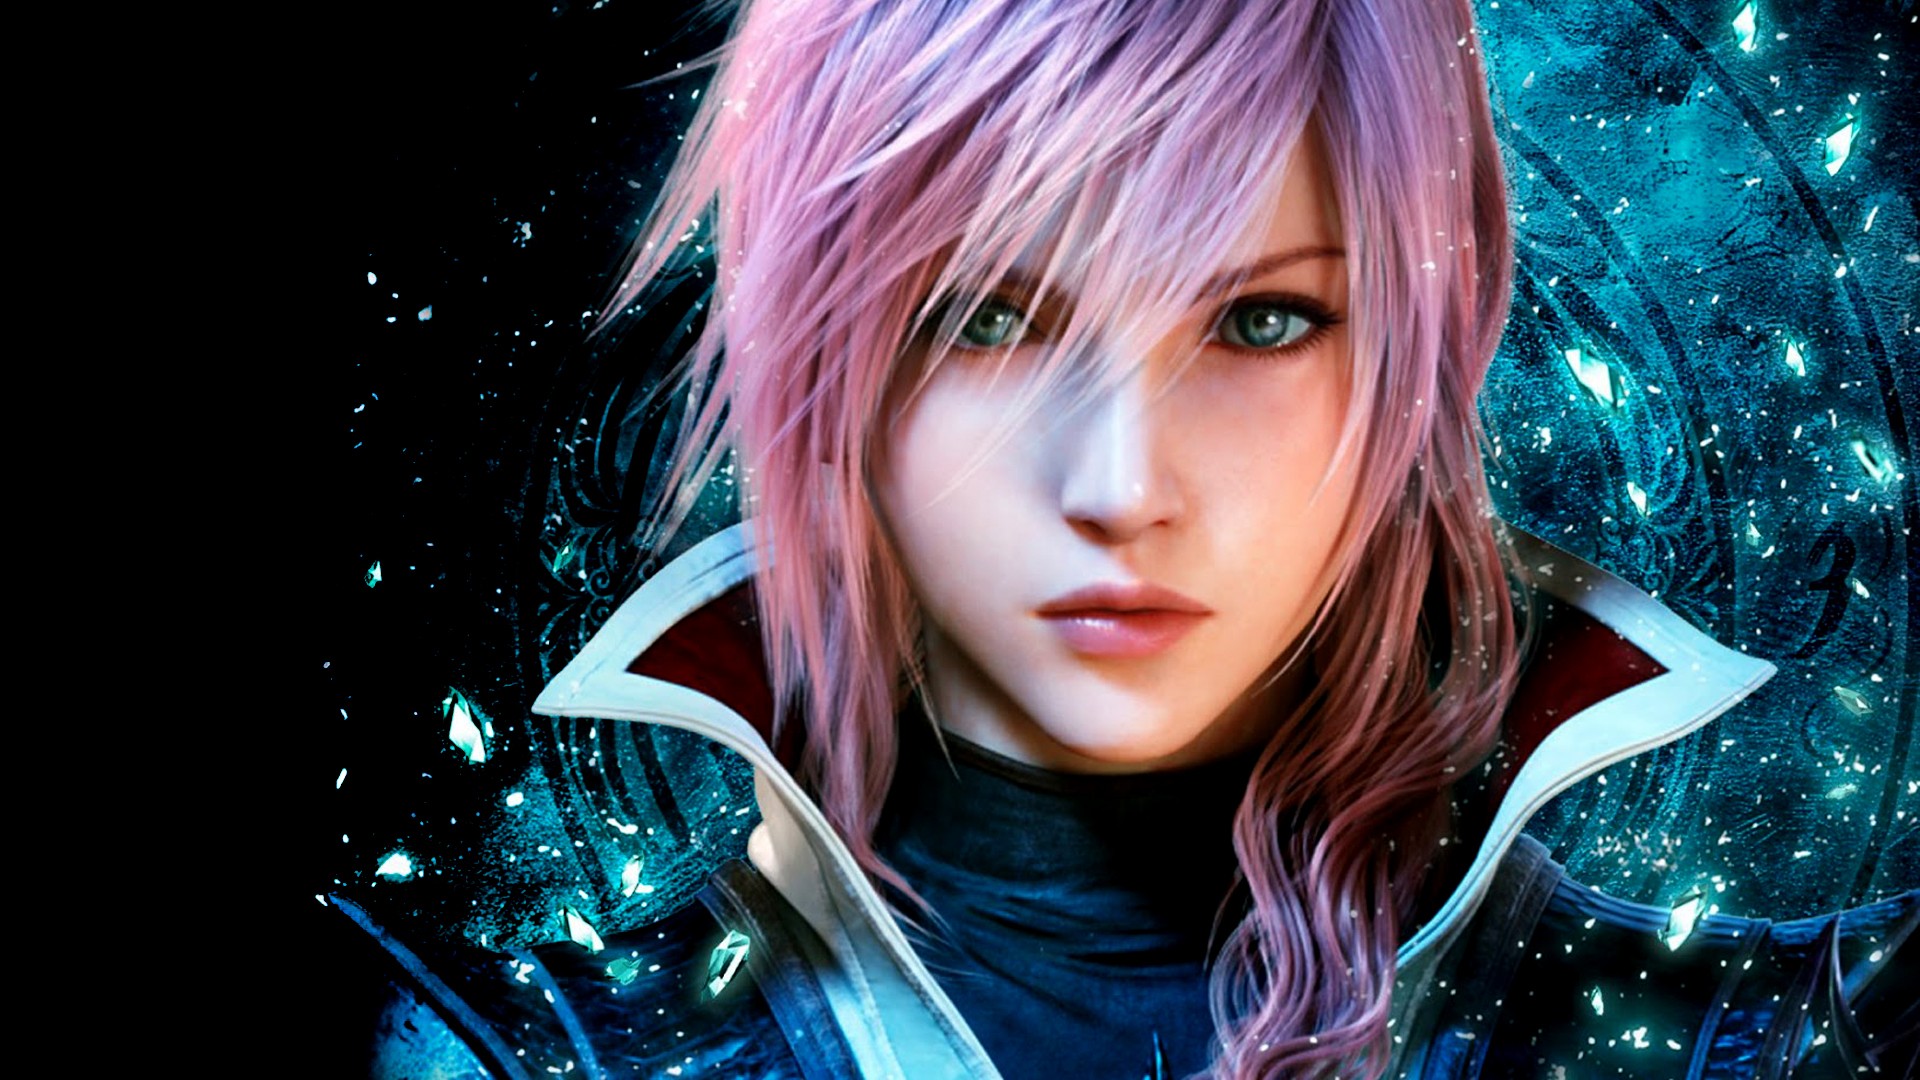 Lightning Returns - Final Fantasy XIII - Wallpaper Full HD ...